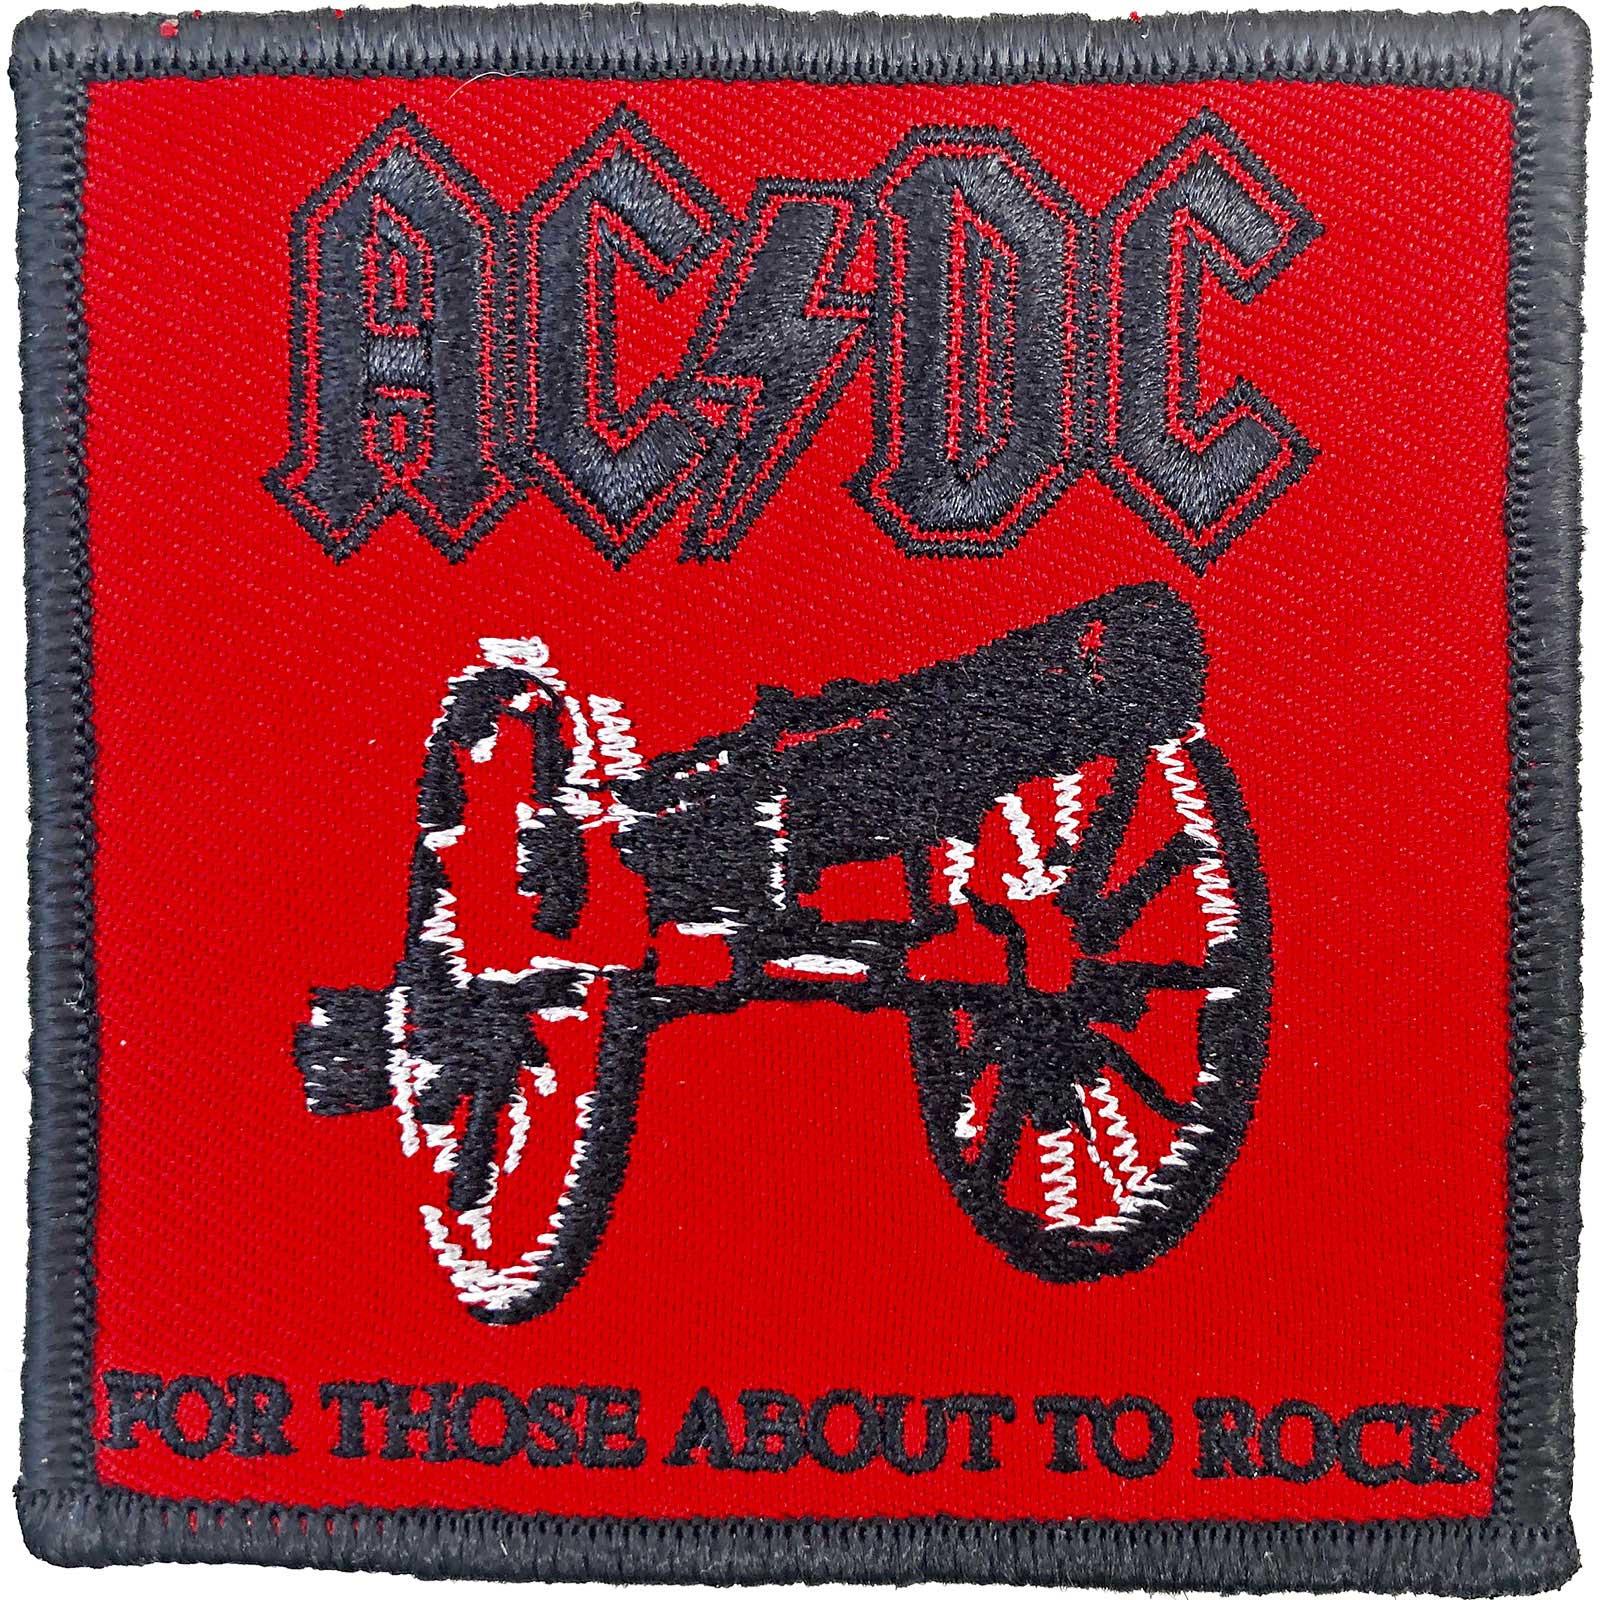 (エーシー・ディーシー) AC/DC オフィシャル商品 For Those About To Rock ワッペン スタンダード アイロン装着 パッチ 【海外通販】